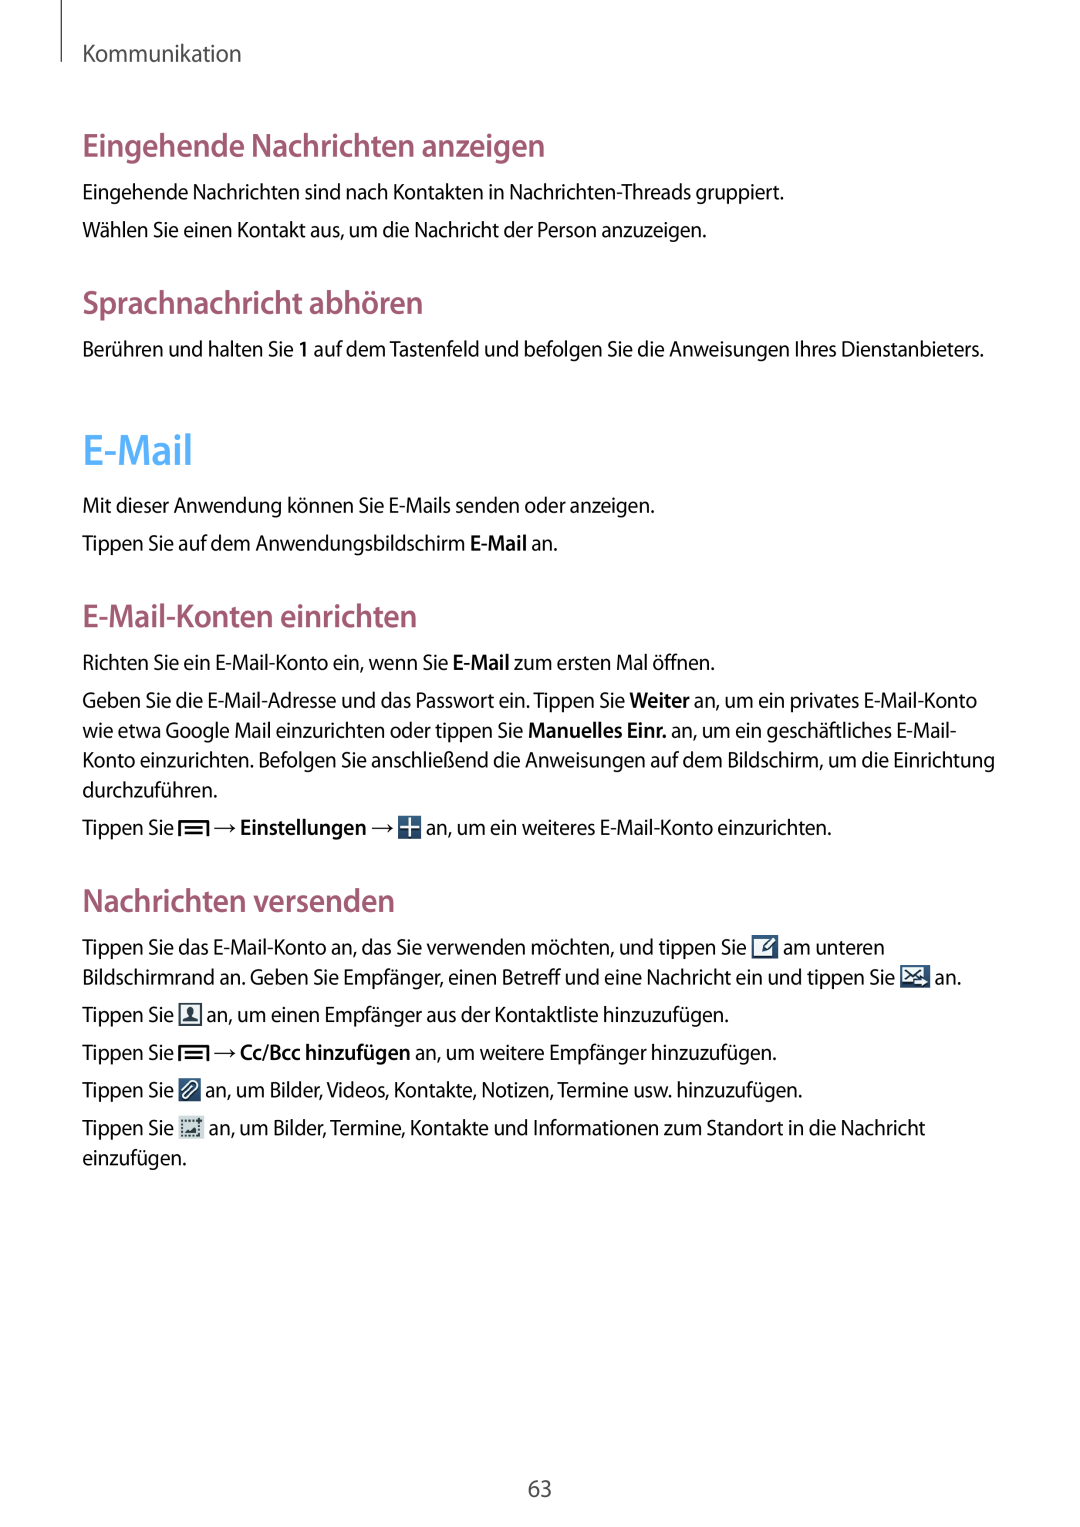 Samsung GT-N7100RWDTUR manual Eingehende Nachrichten anzeigen, Sprachnachricht abhören, E-Mail-Konten einrichten 